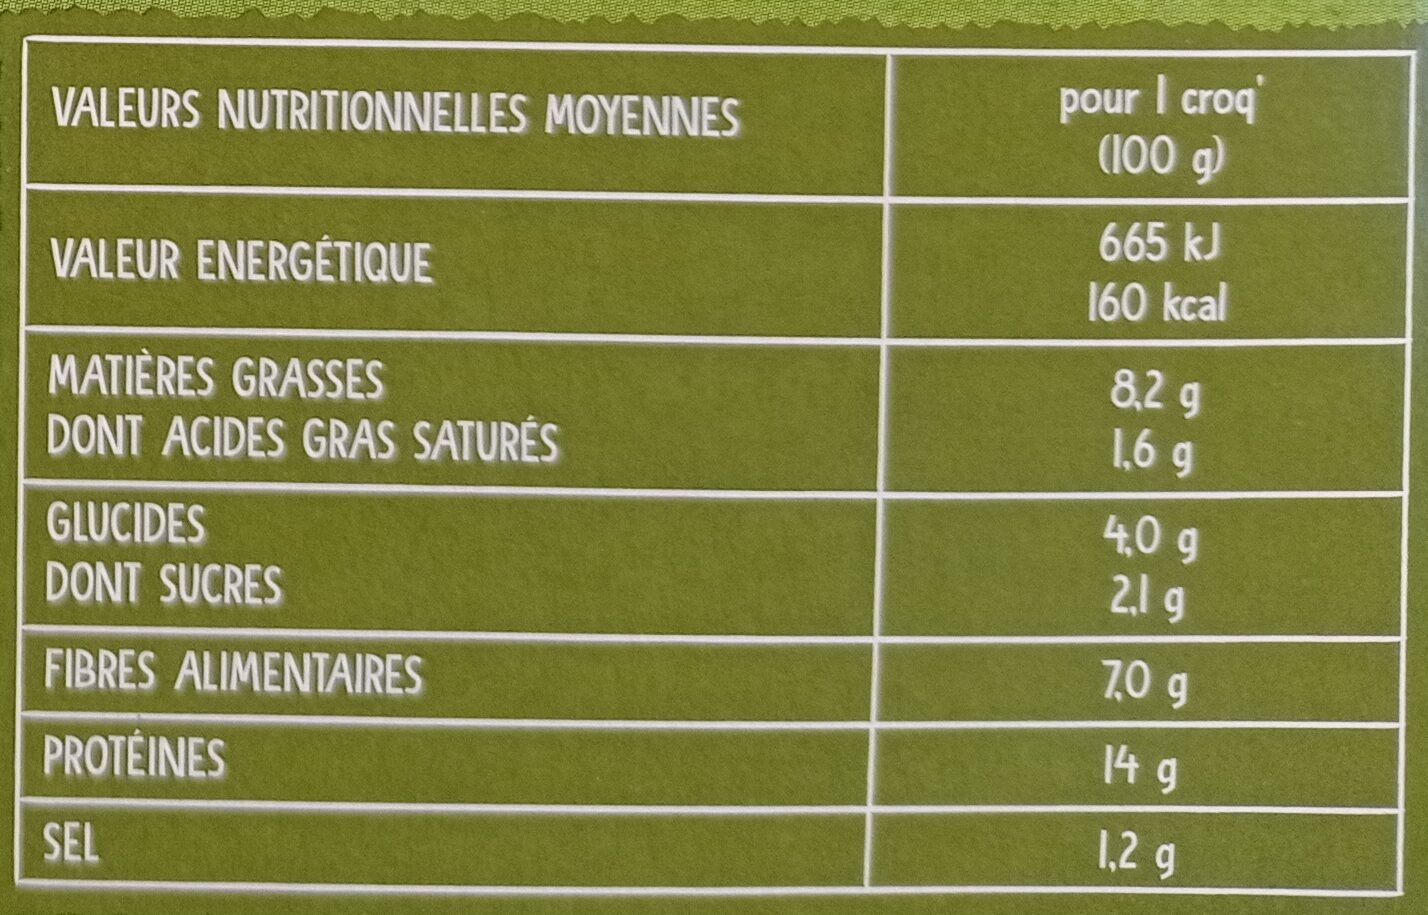 Croq' soja à la provencale - Nutrition facts - fr